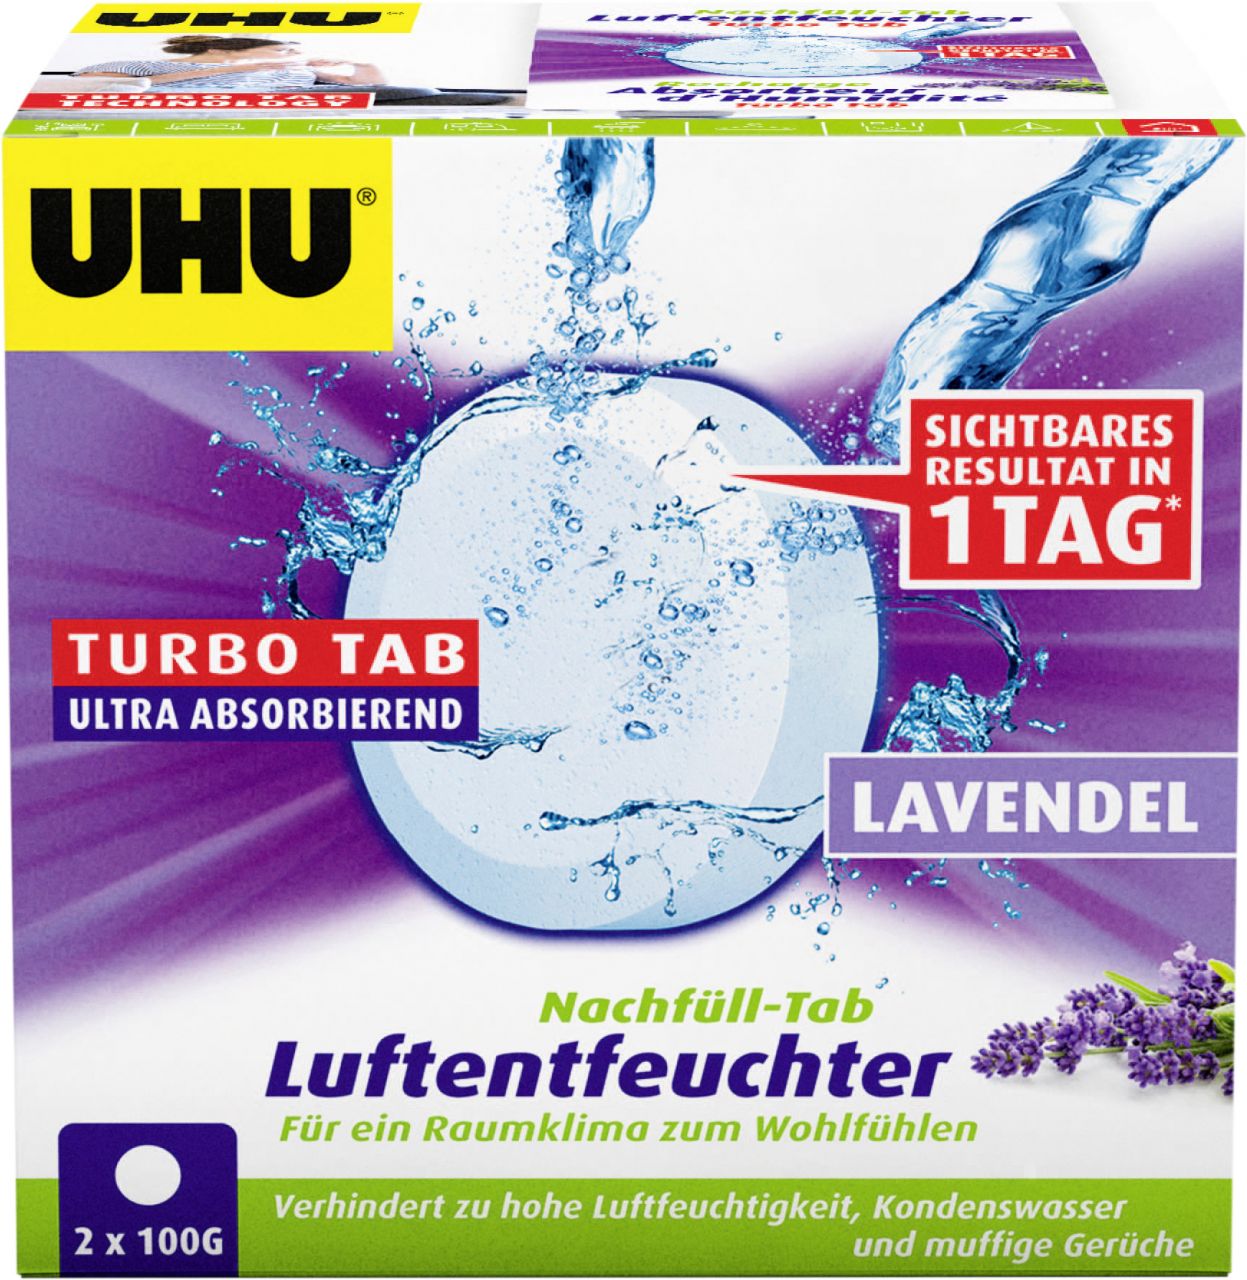 UHU Luftentfeuchter Nachfülltabs Lavendel, 2 x 100 g GLO765550084